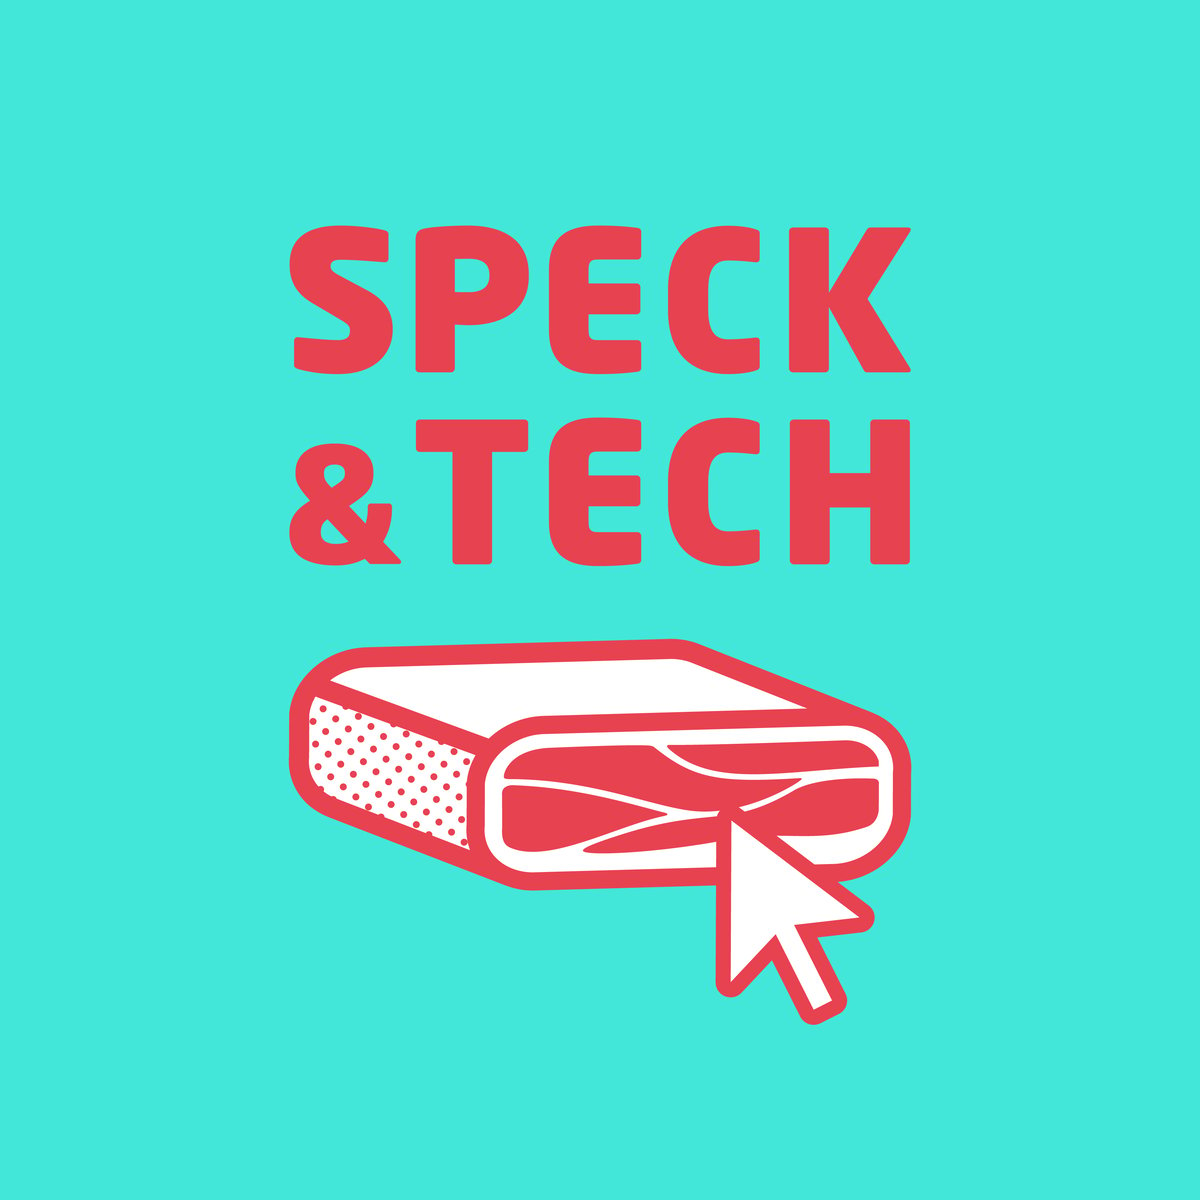 Speck&Tech little shop